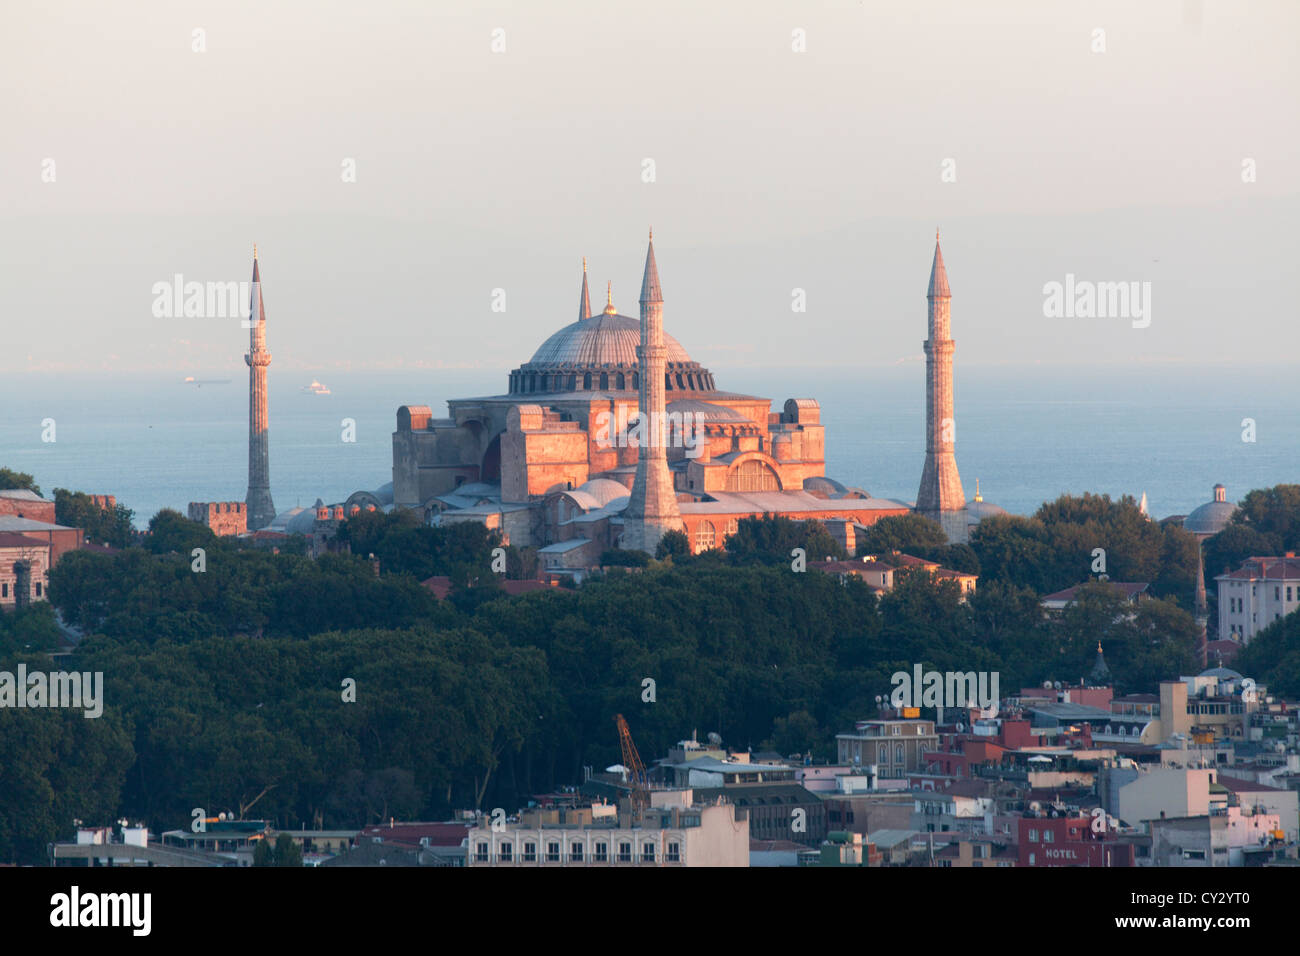 Hagia Sophia (Aya Sophia) in Istanbul Stock Photo